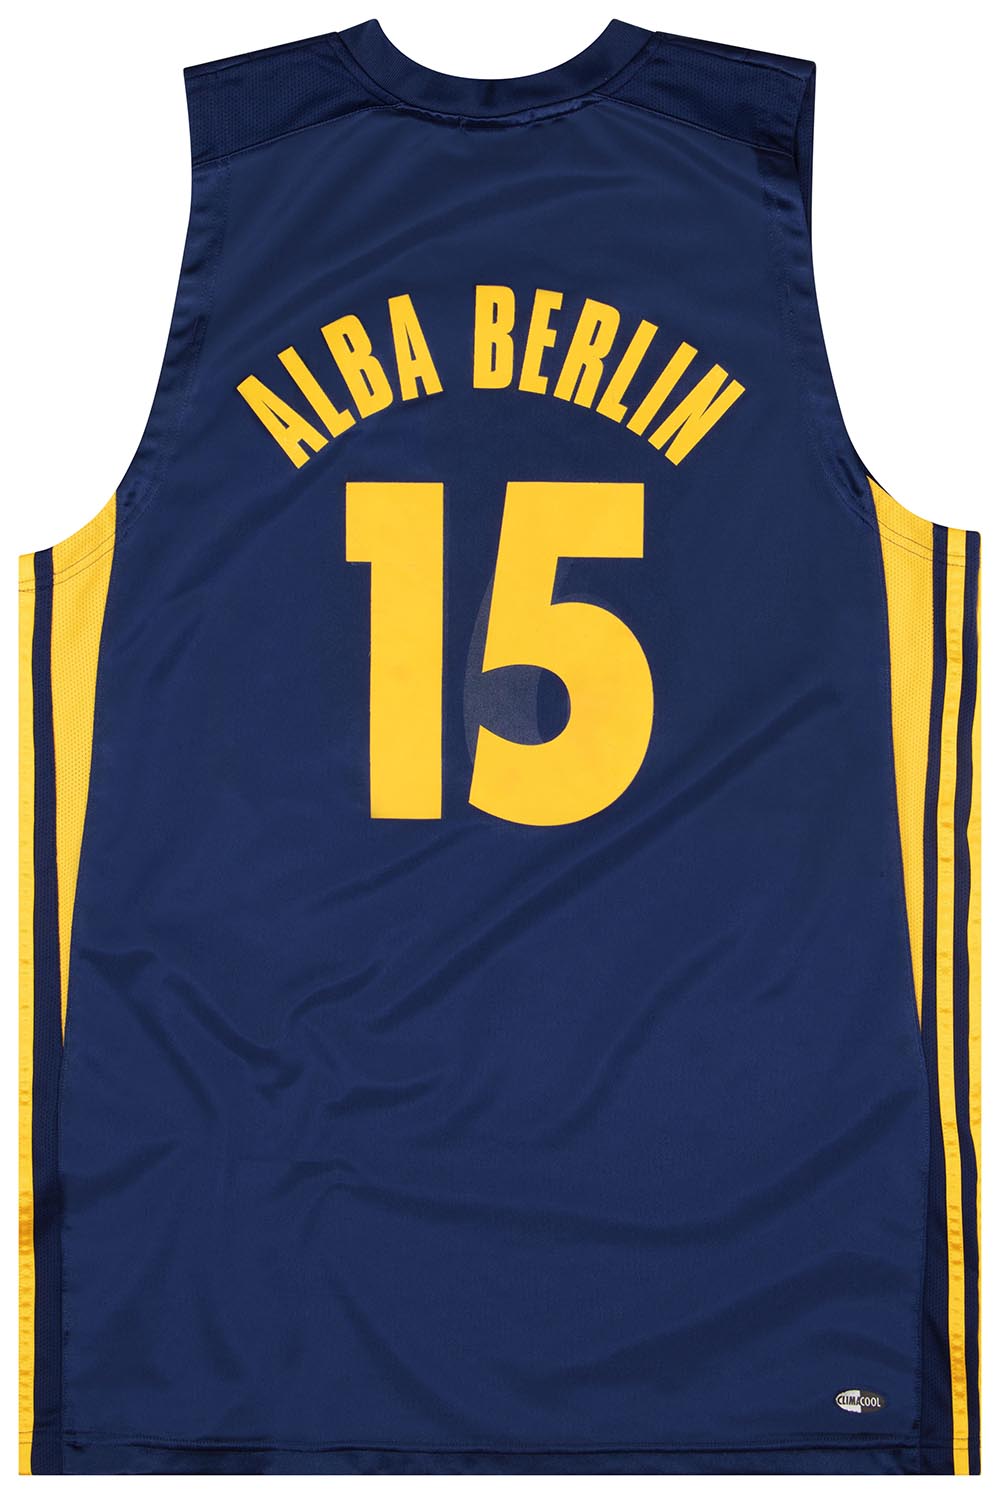 Berlin Basketball Jersey